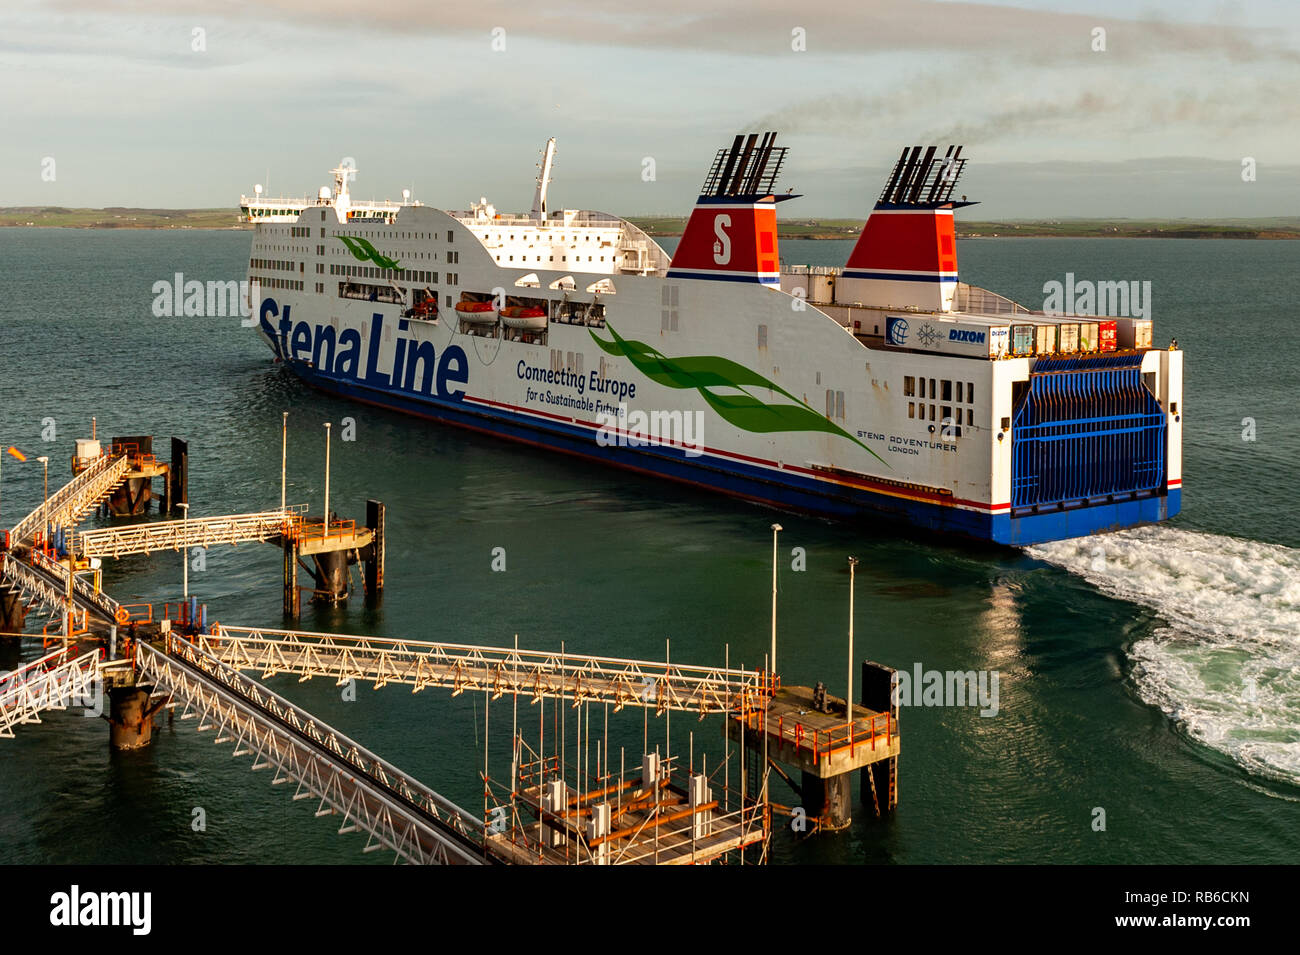 Stena Line traghetto "tena avventuriero' si diparte Holyhead Porto dei Traghetti di linea per Dublino, Irlanda con copia spazio. Foto Stock